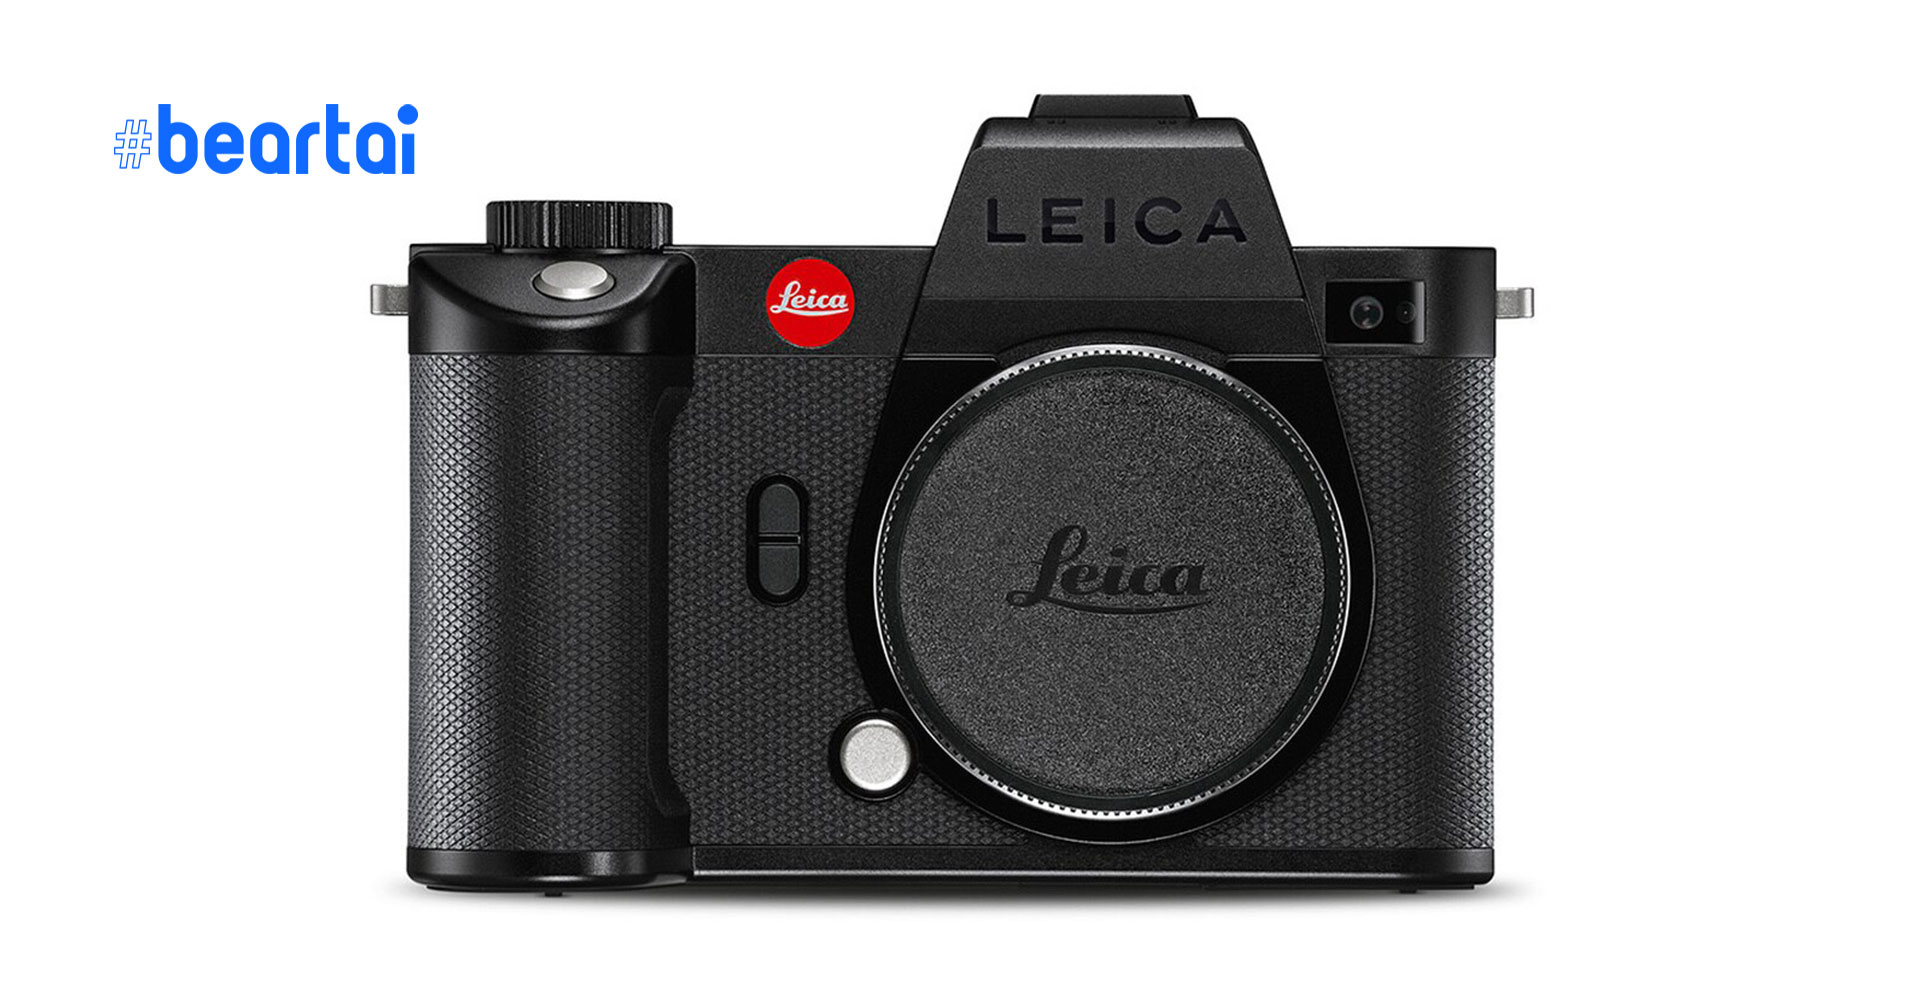 หลุดราคากล้อง Leica SL2-S ก่อนเปิดตัวคืนนี้ ที่ 190,000 บาท!